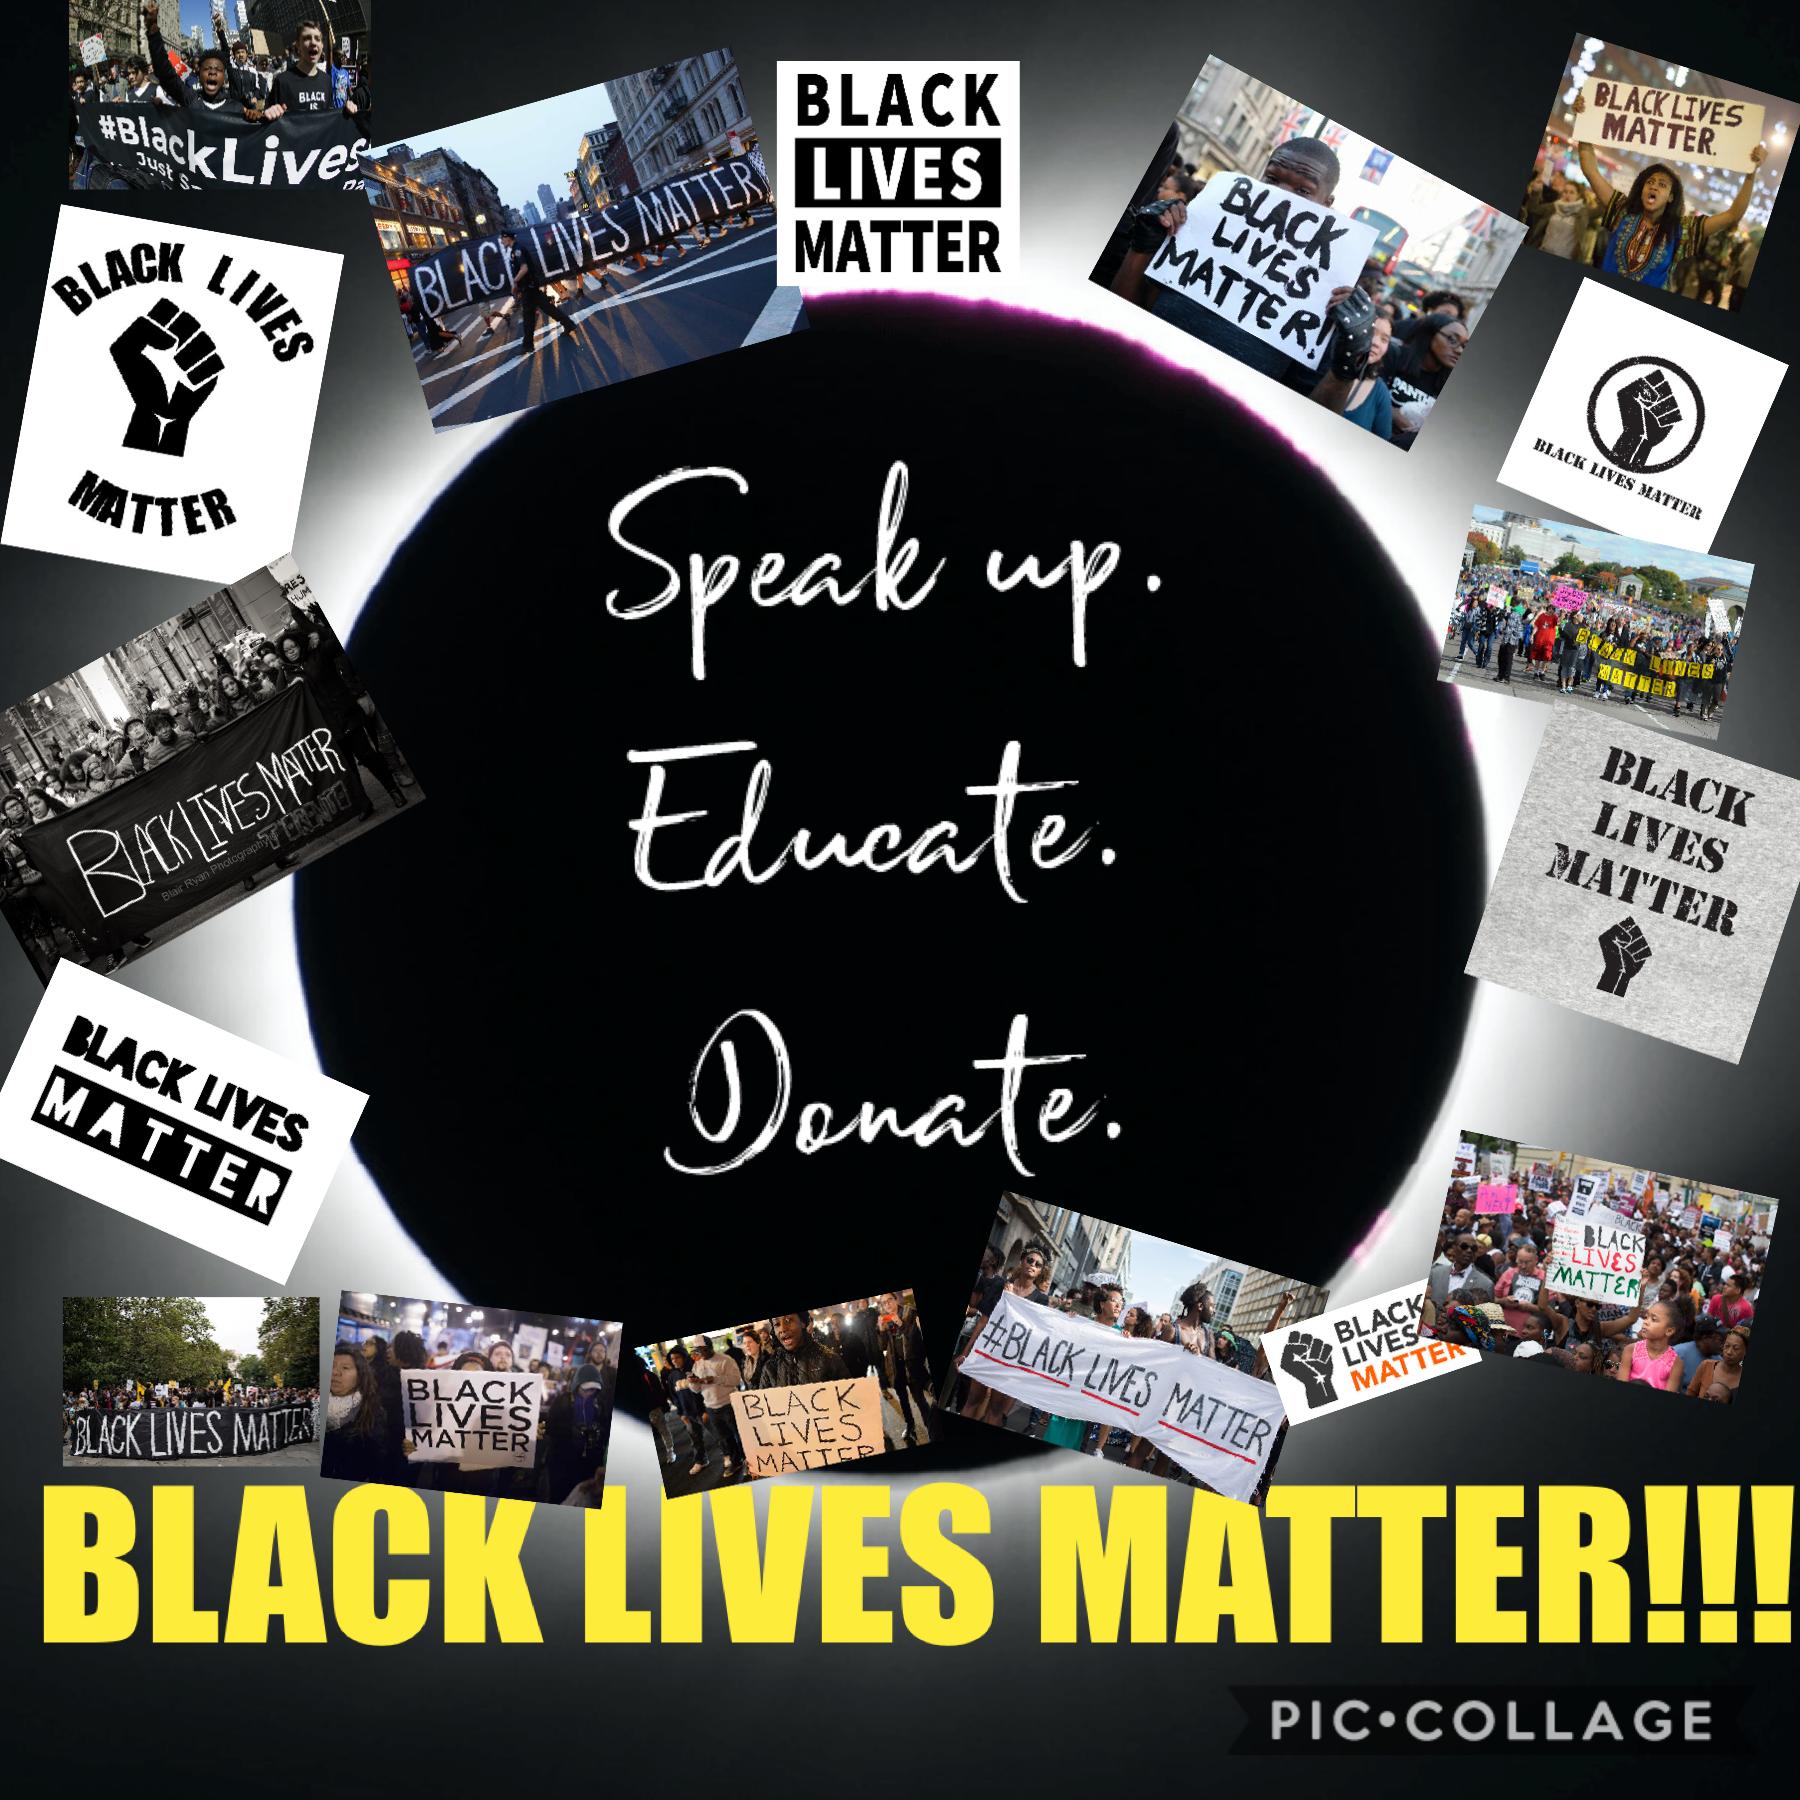 Black lives matter! ✊✊🏻✊🏼✊🏽✊🏾✊🏿